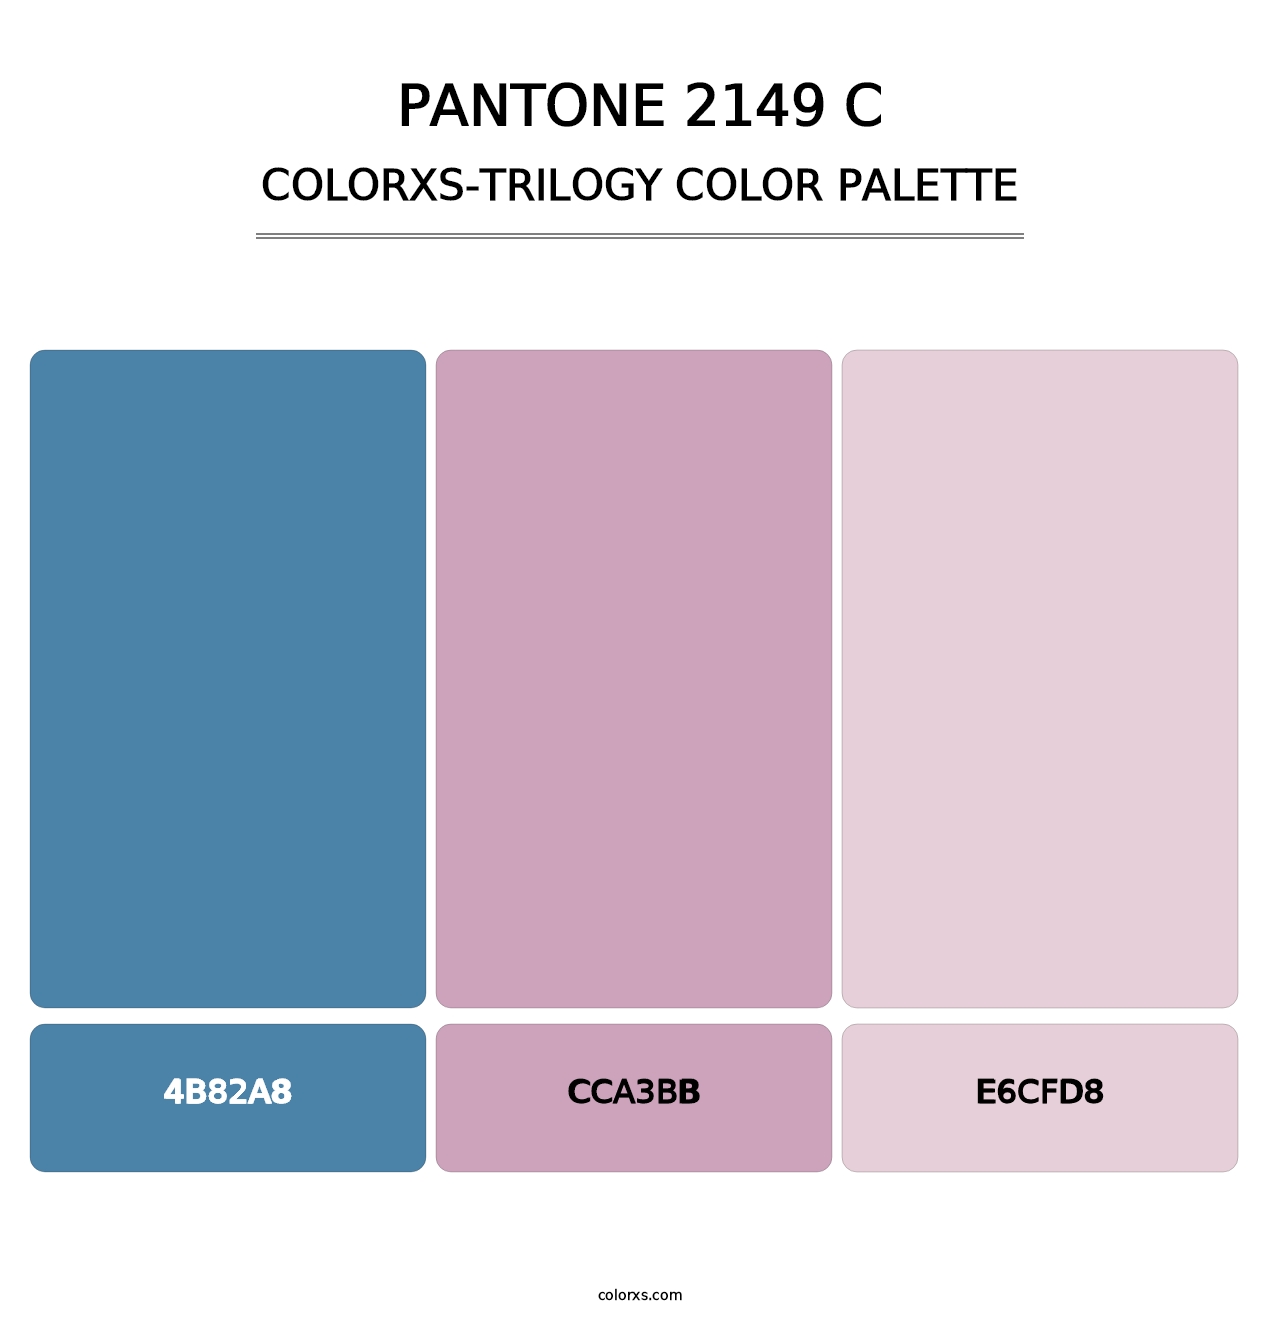 PANTONE 2149 C - Colorxs Trilogy Palette